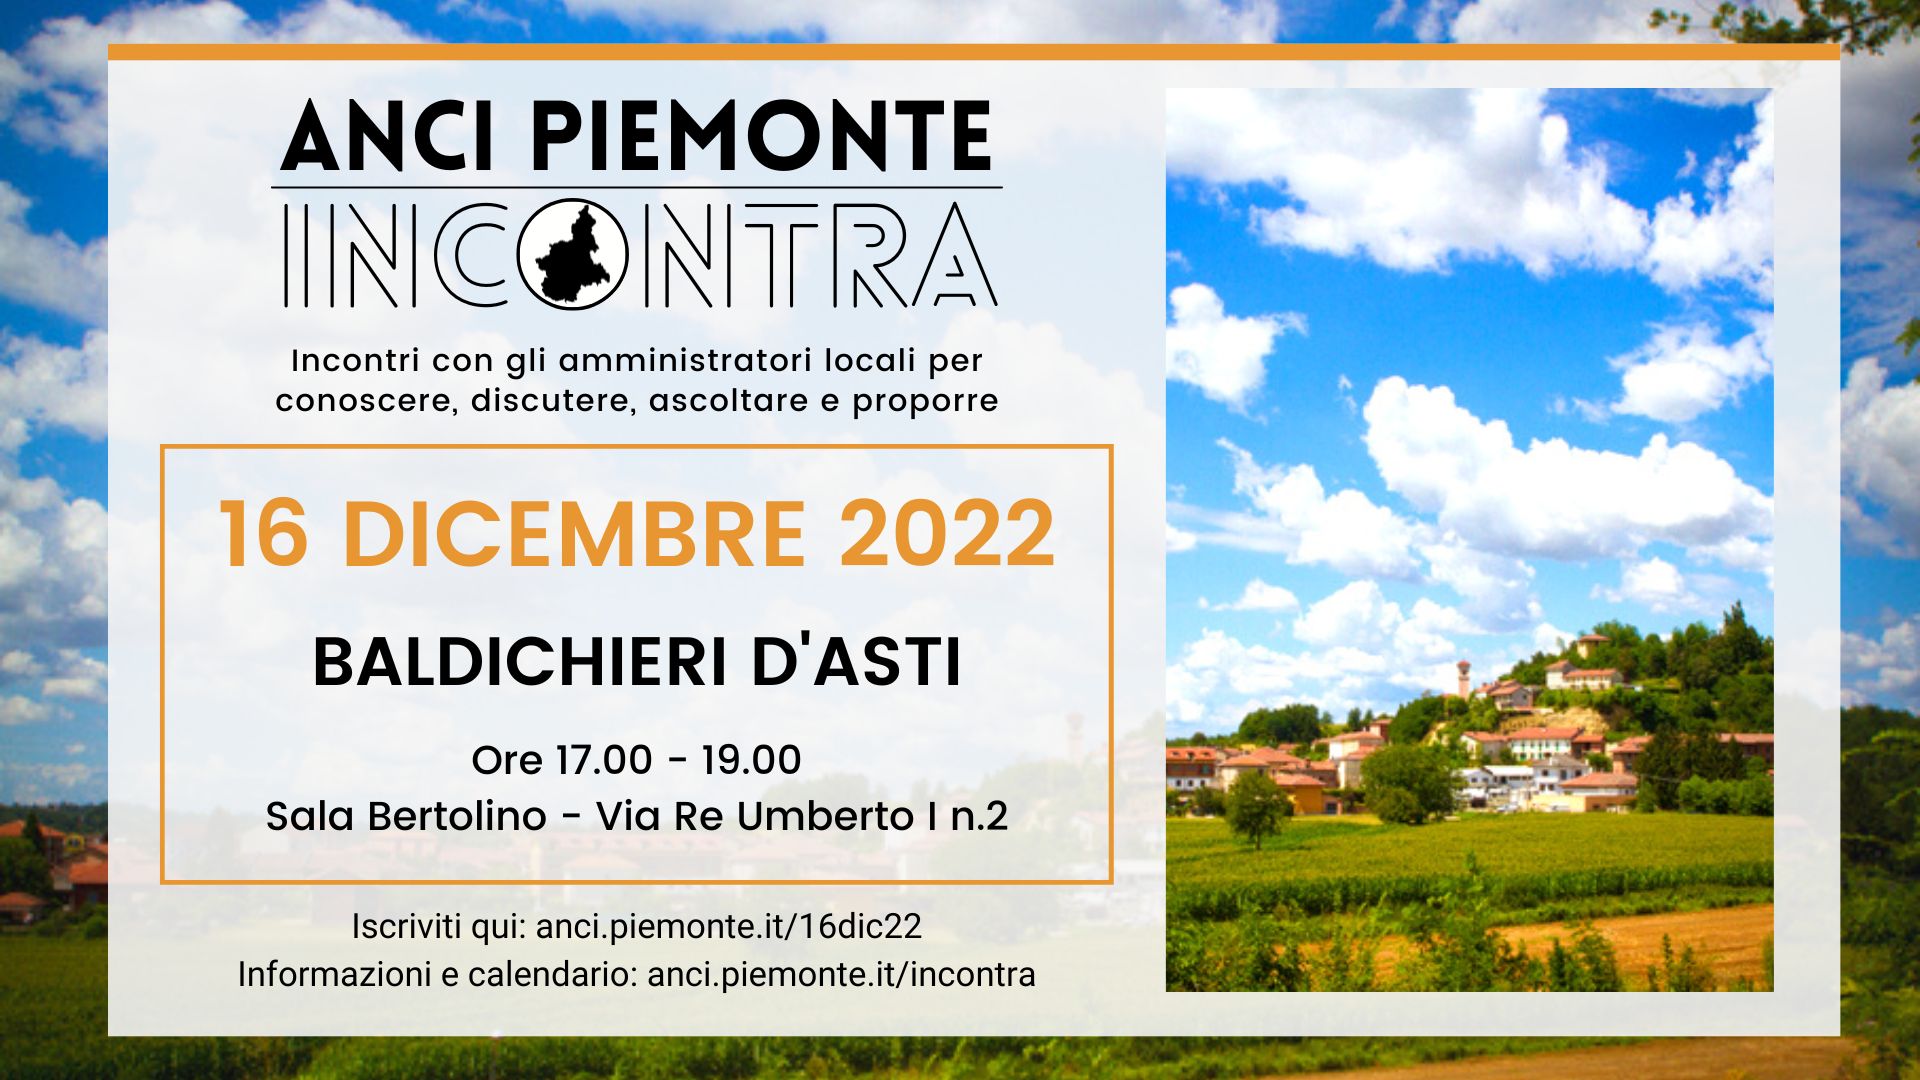 ANCI Piemonte Incontra - 16 dicembre 2022 - Baldichieri d'Asti